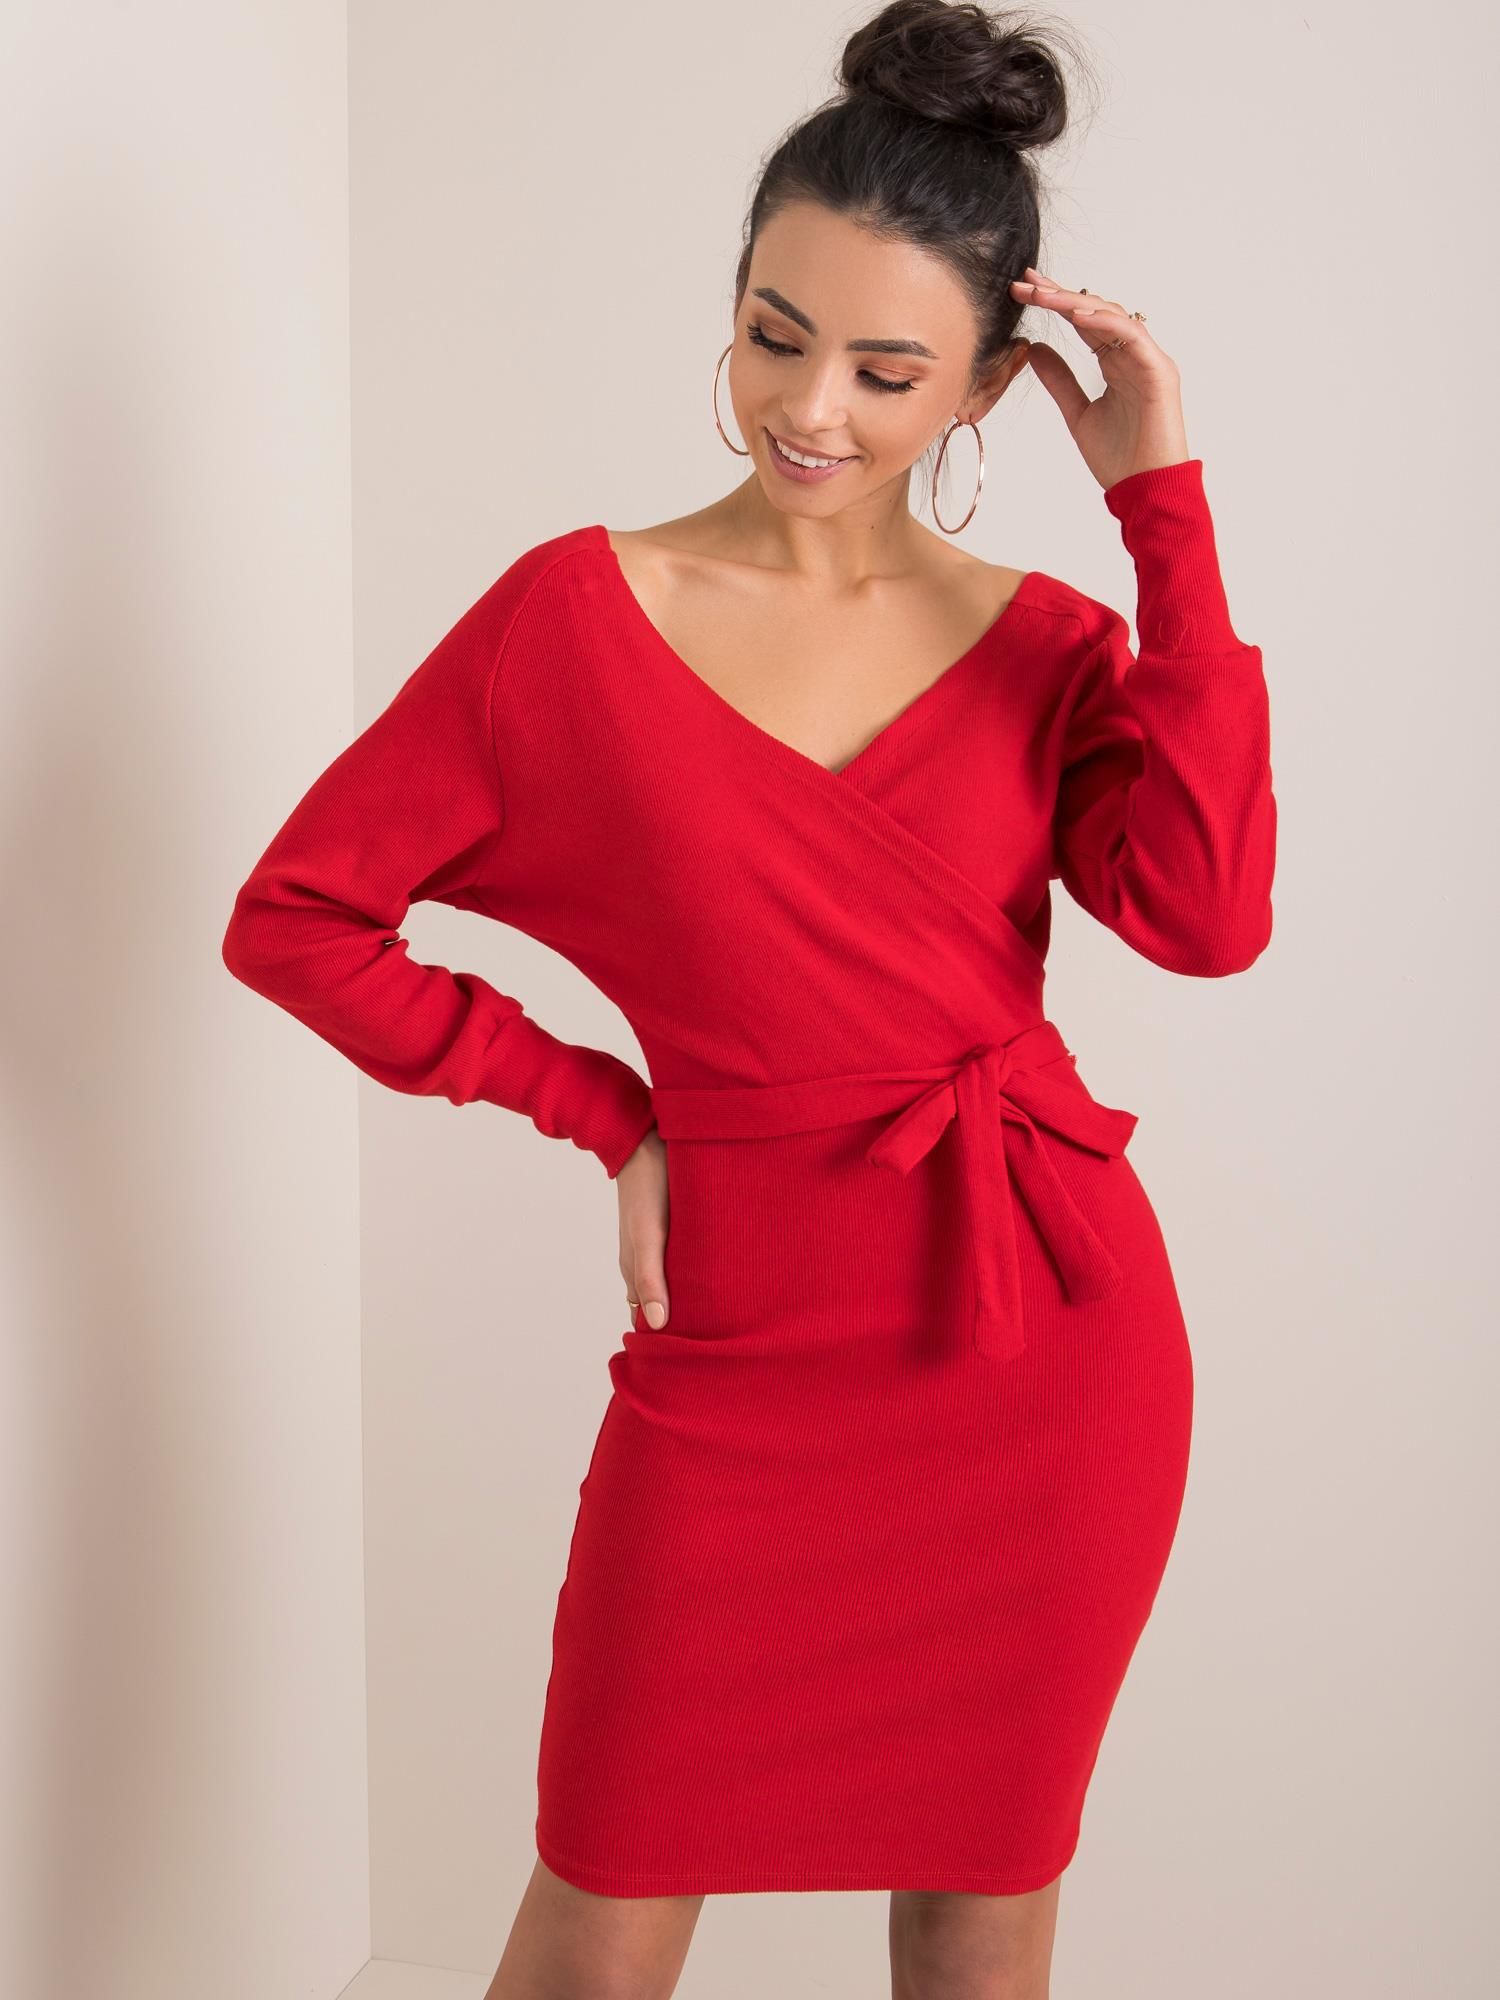 Dámské červené šaty s páskem RV-SK-5297.23P-red Velikost: M